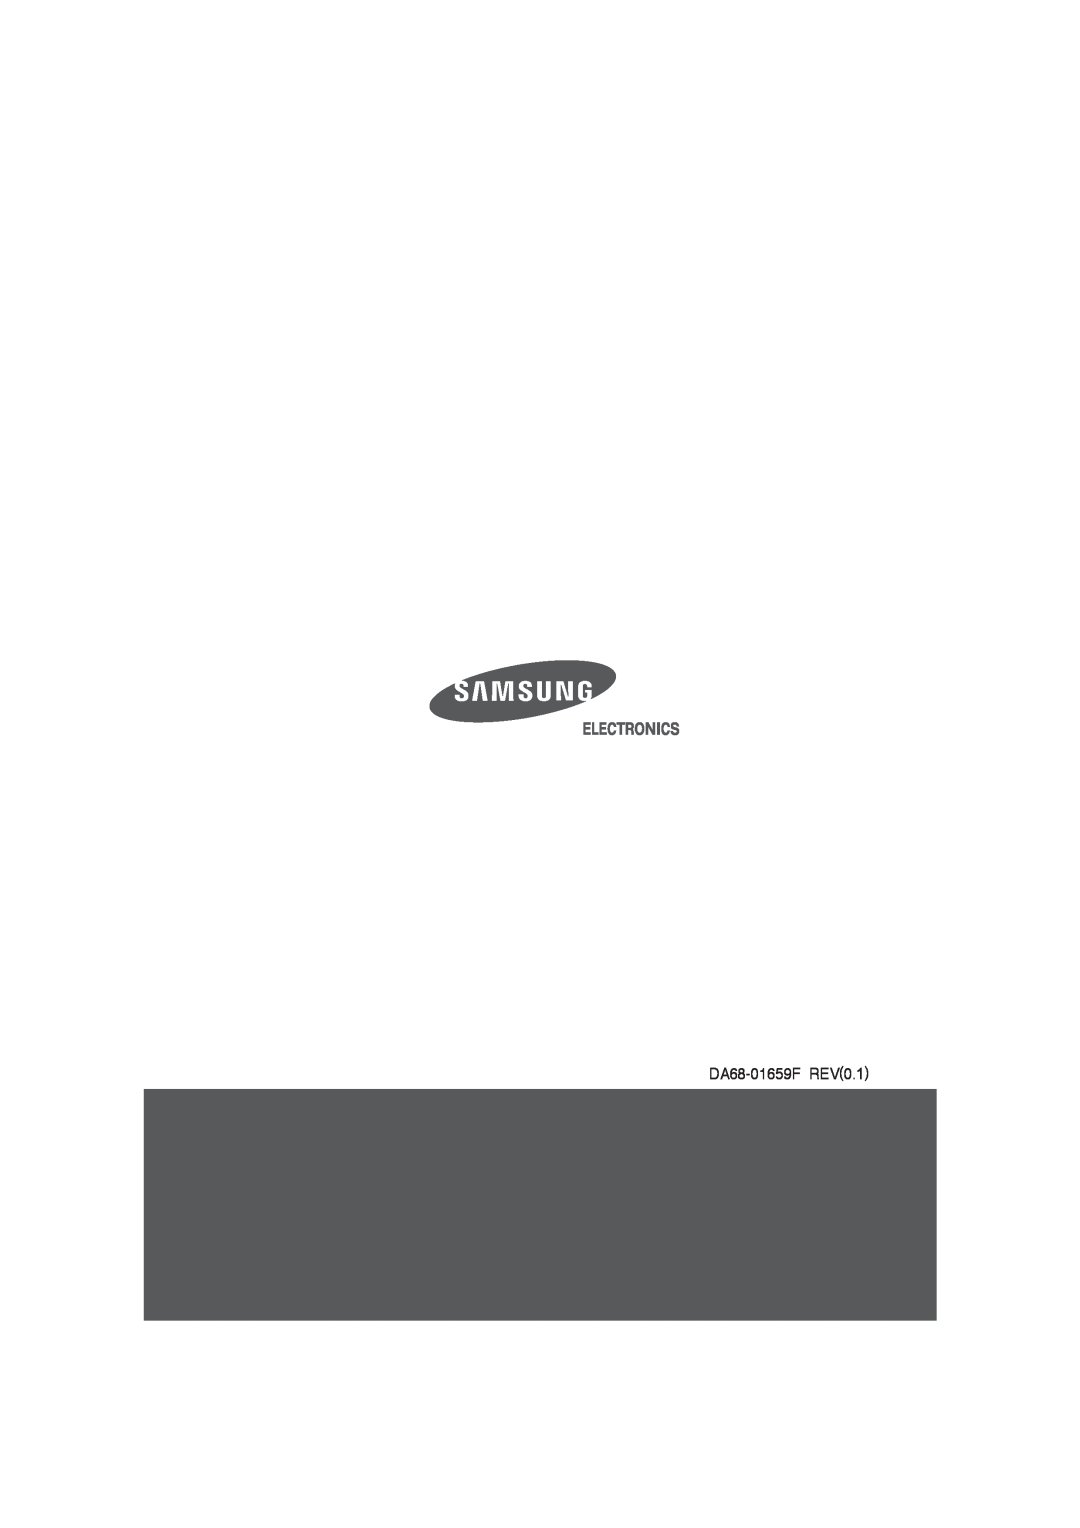 Samsung RT25S manual DA68-01659FREV0.1 